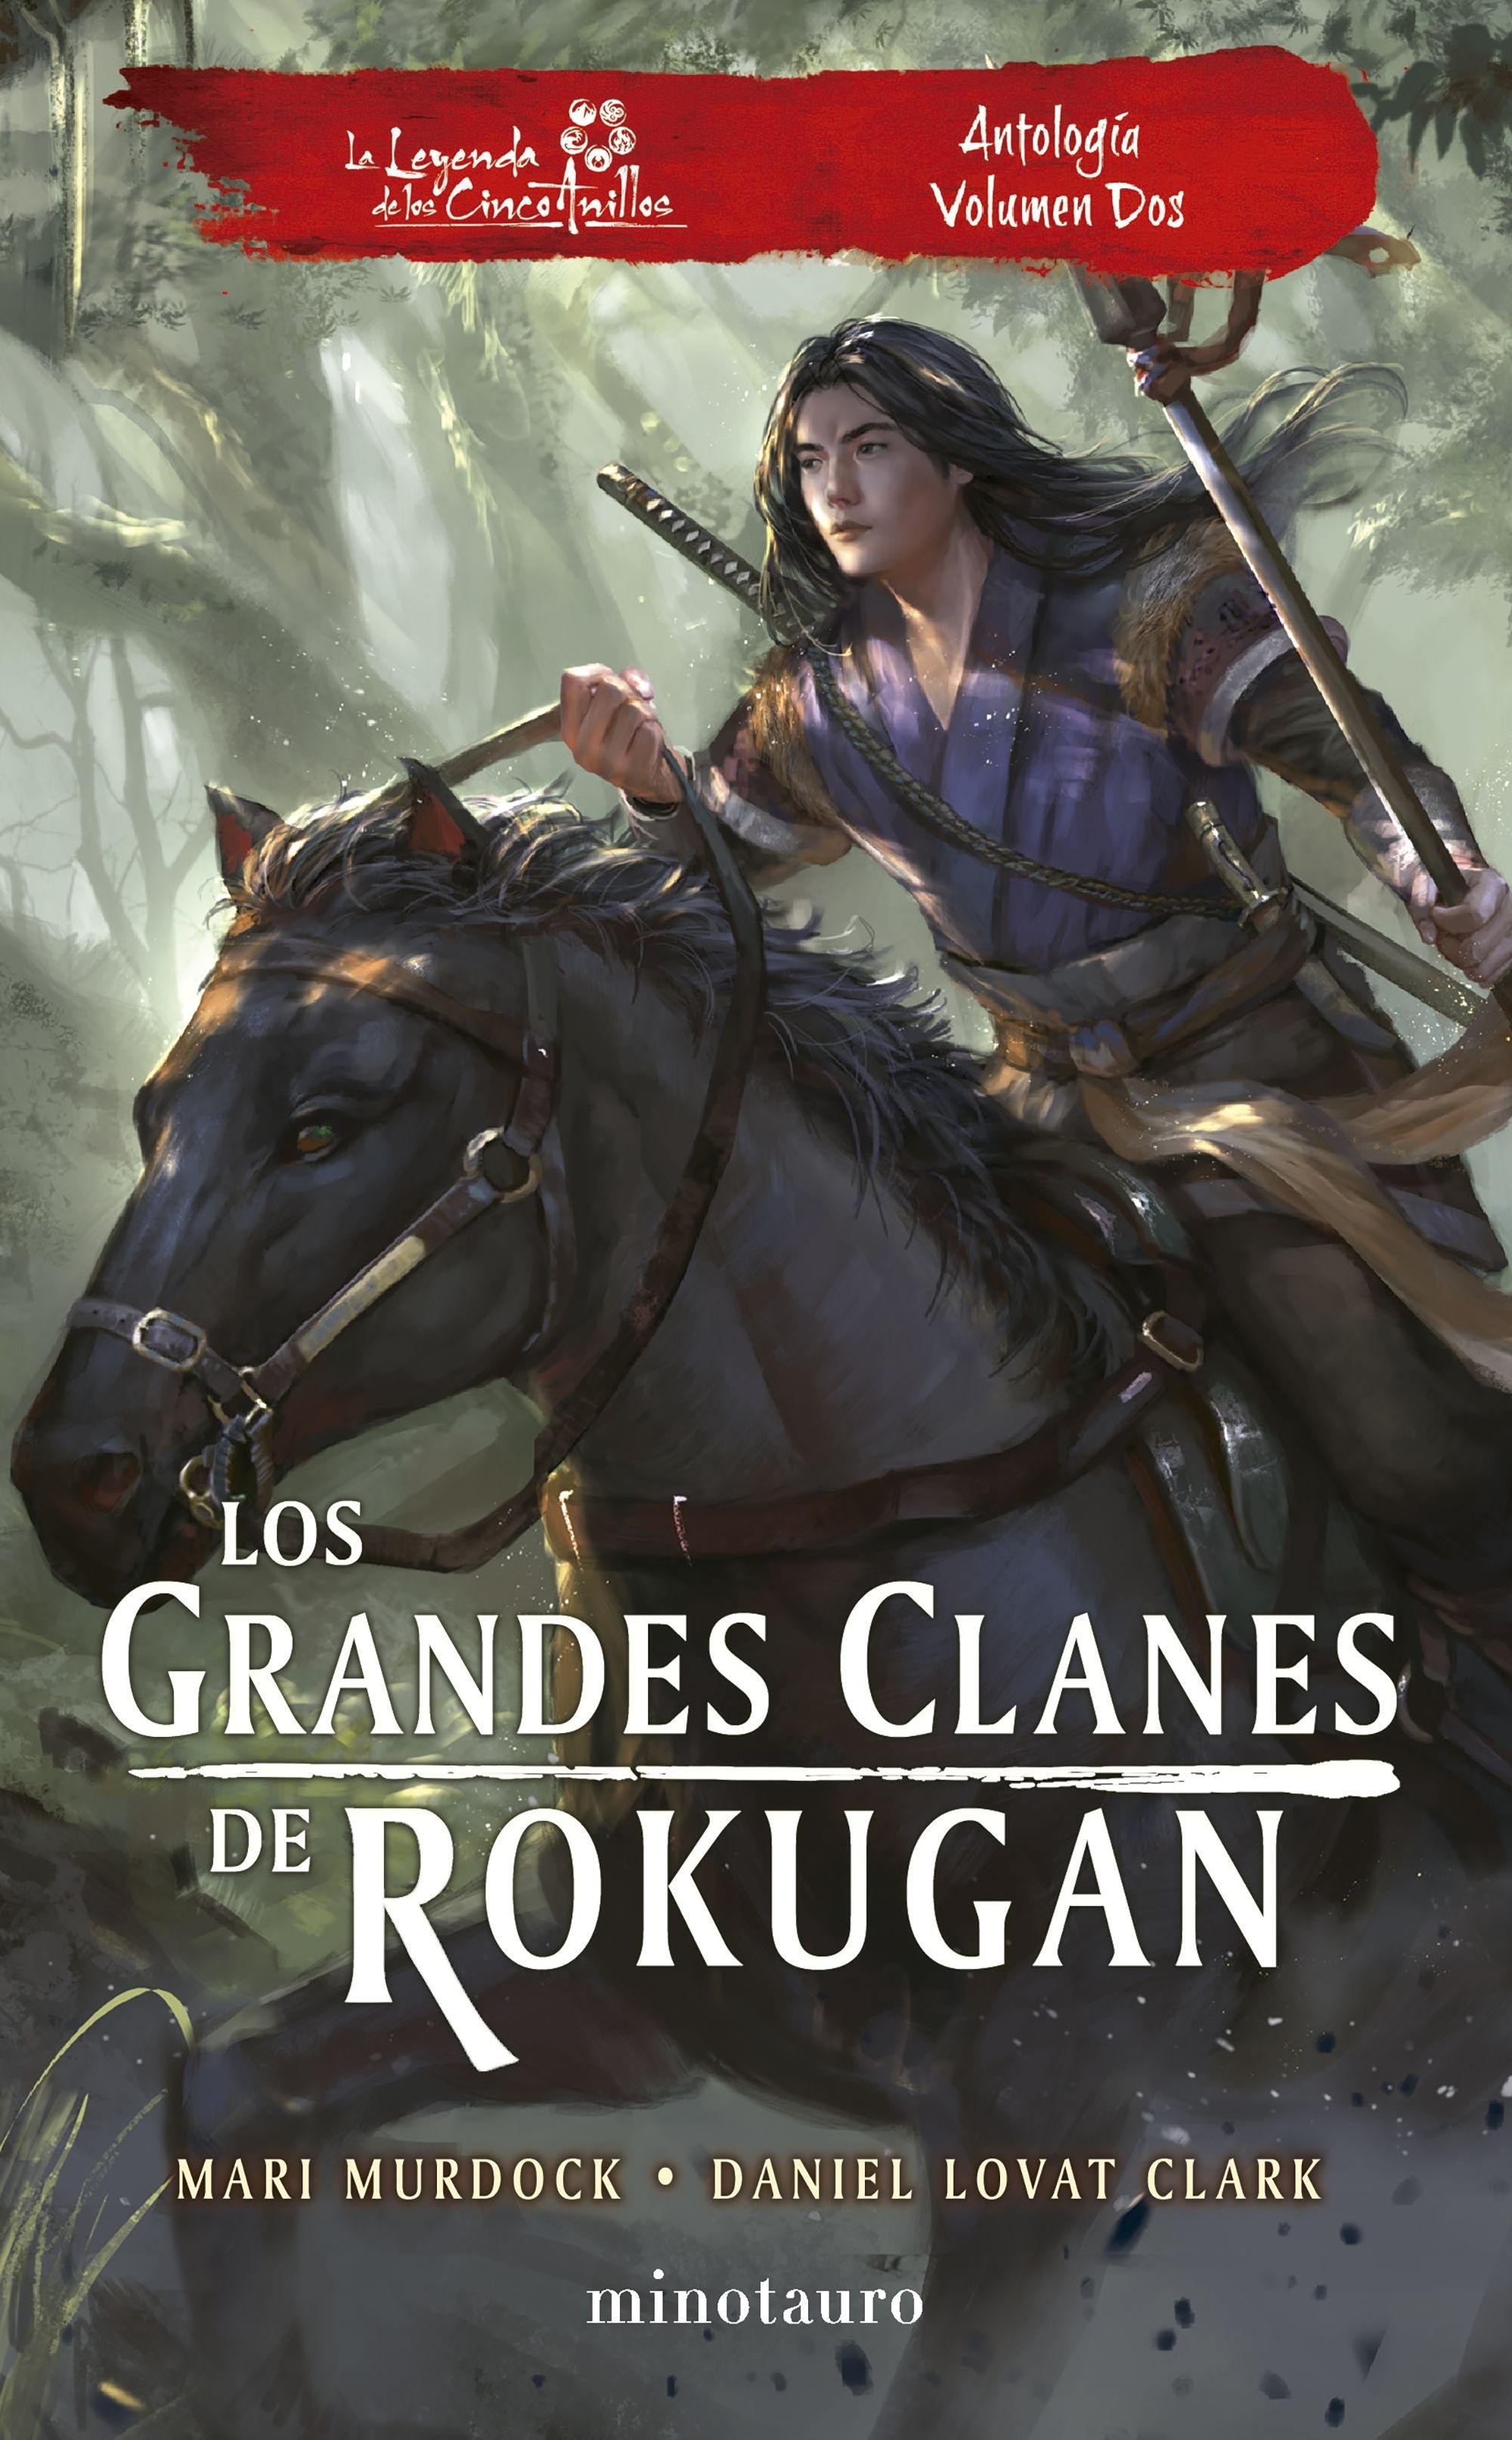 Los grandes clanes de Rokugan. Antología volumen dos. 